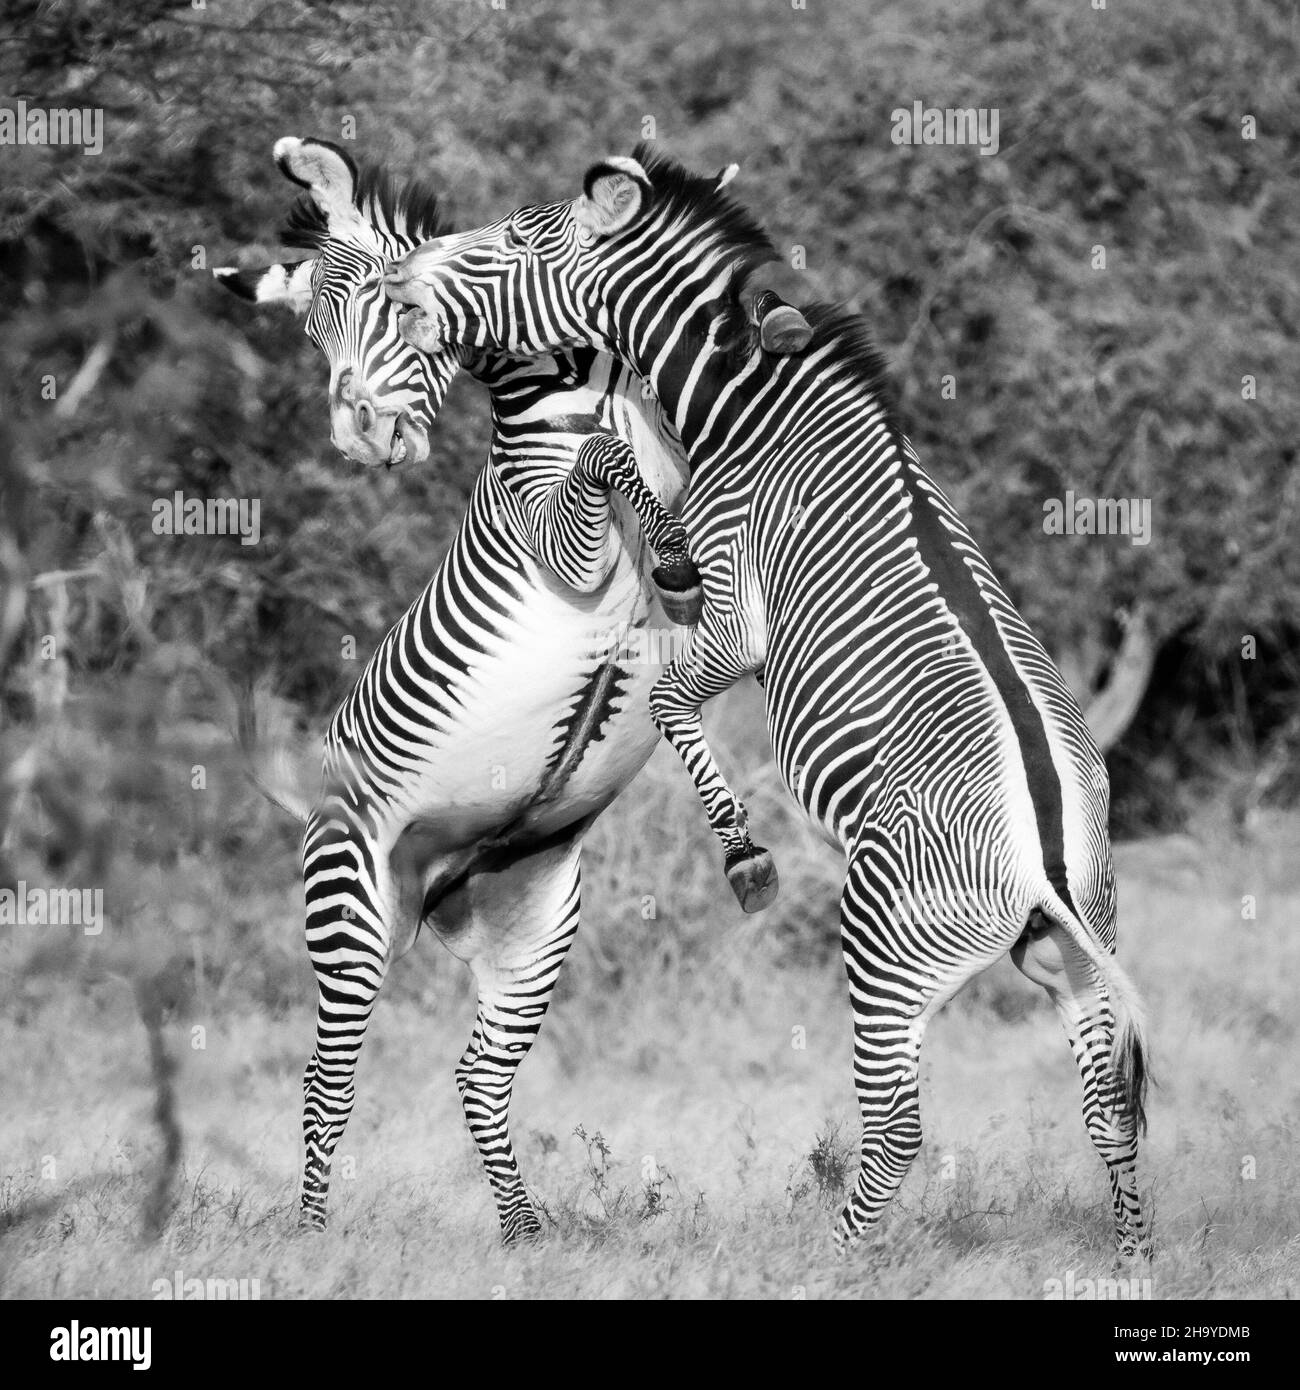 Dos cebras femeninas de Grévy peleando o jugando o bailando - Reserva Nacional de Samburu, Kenia Foto de stock